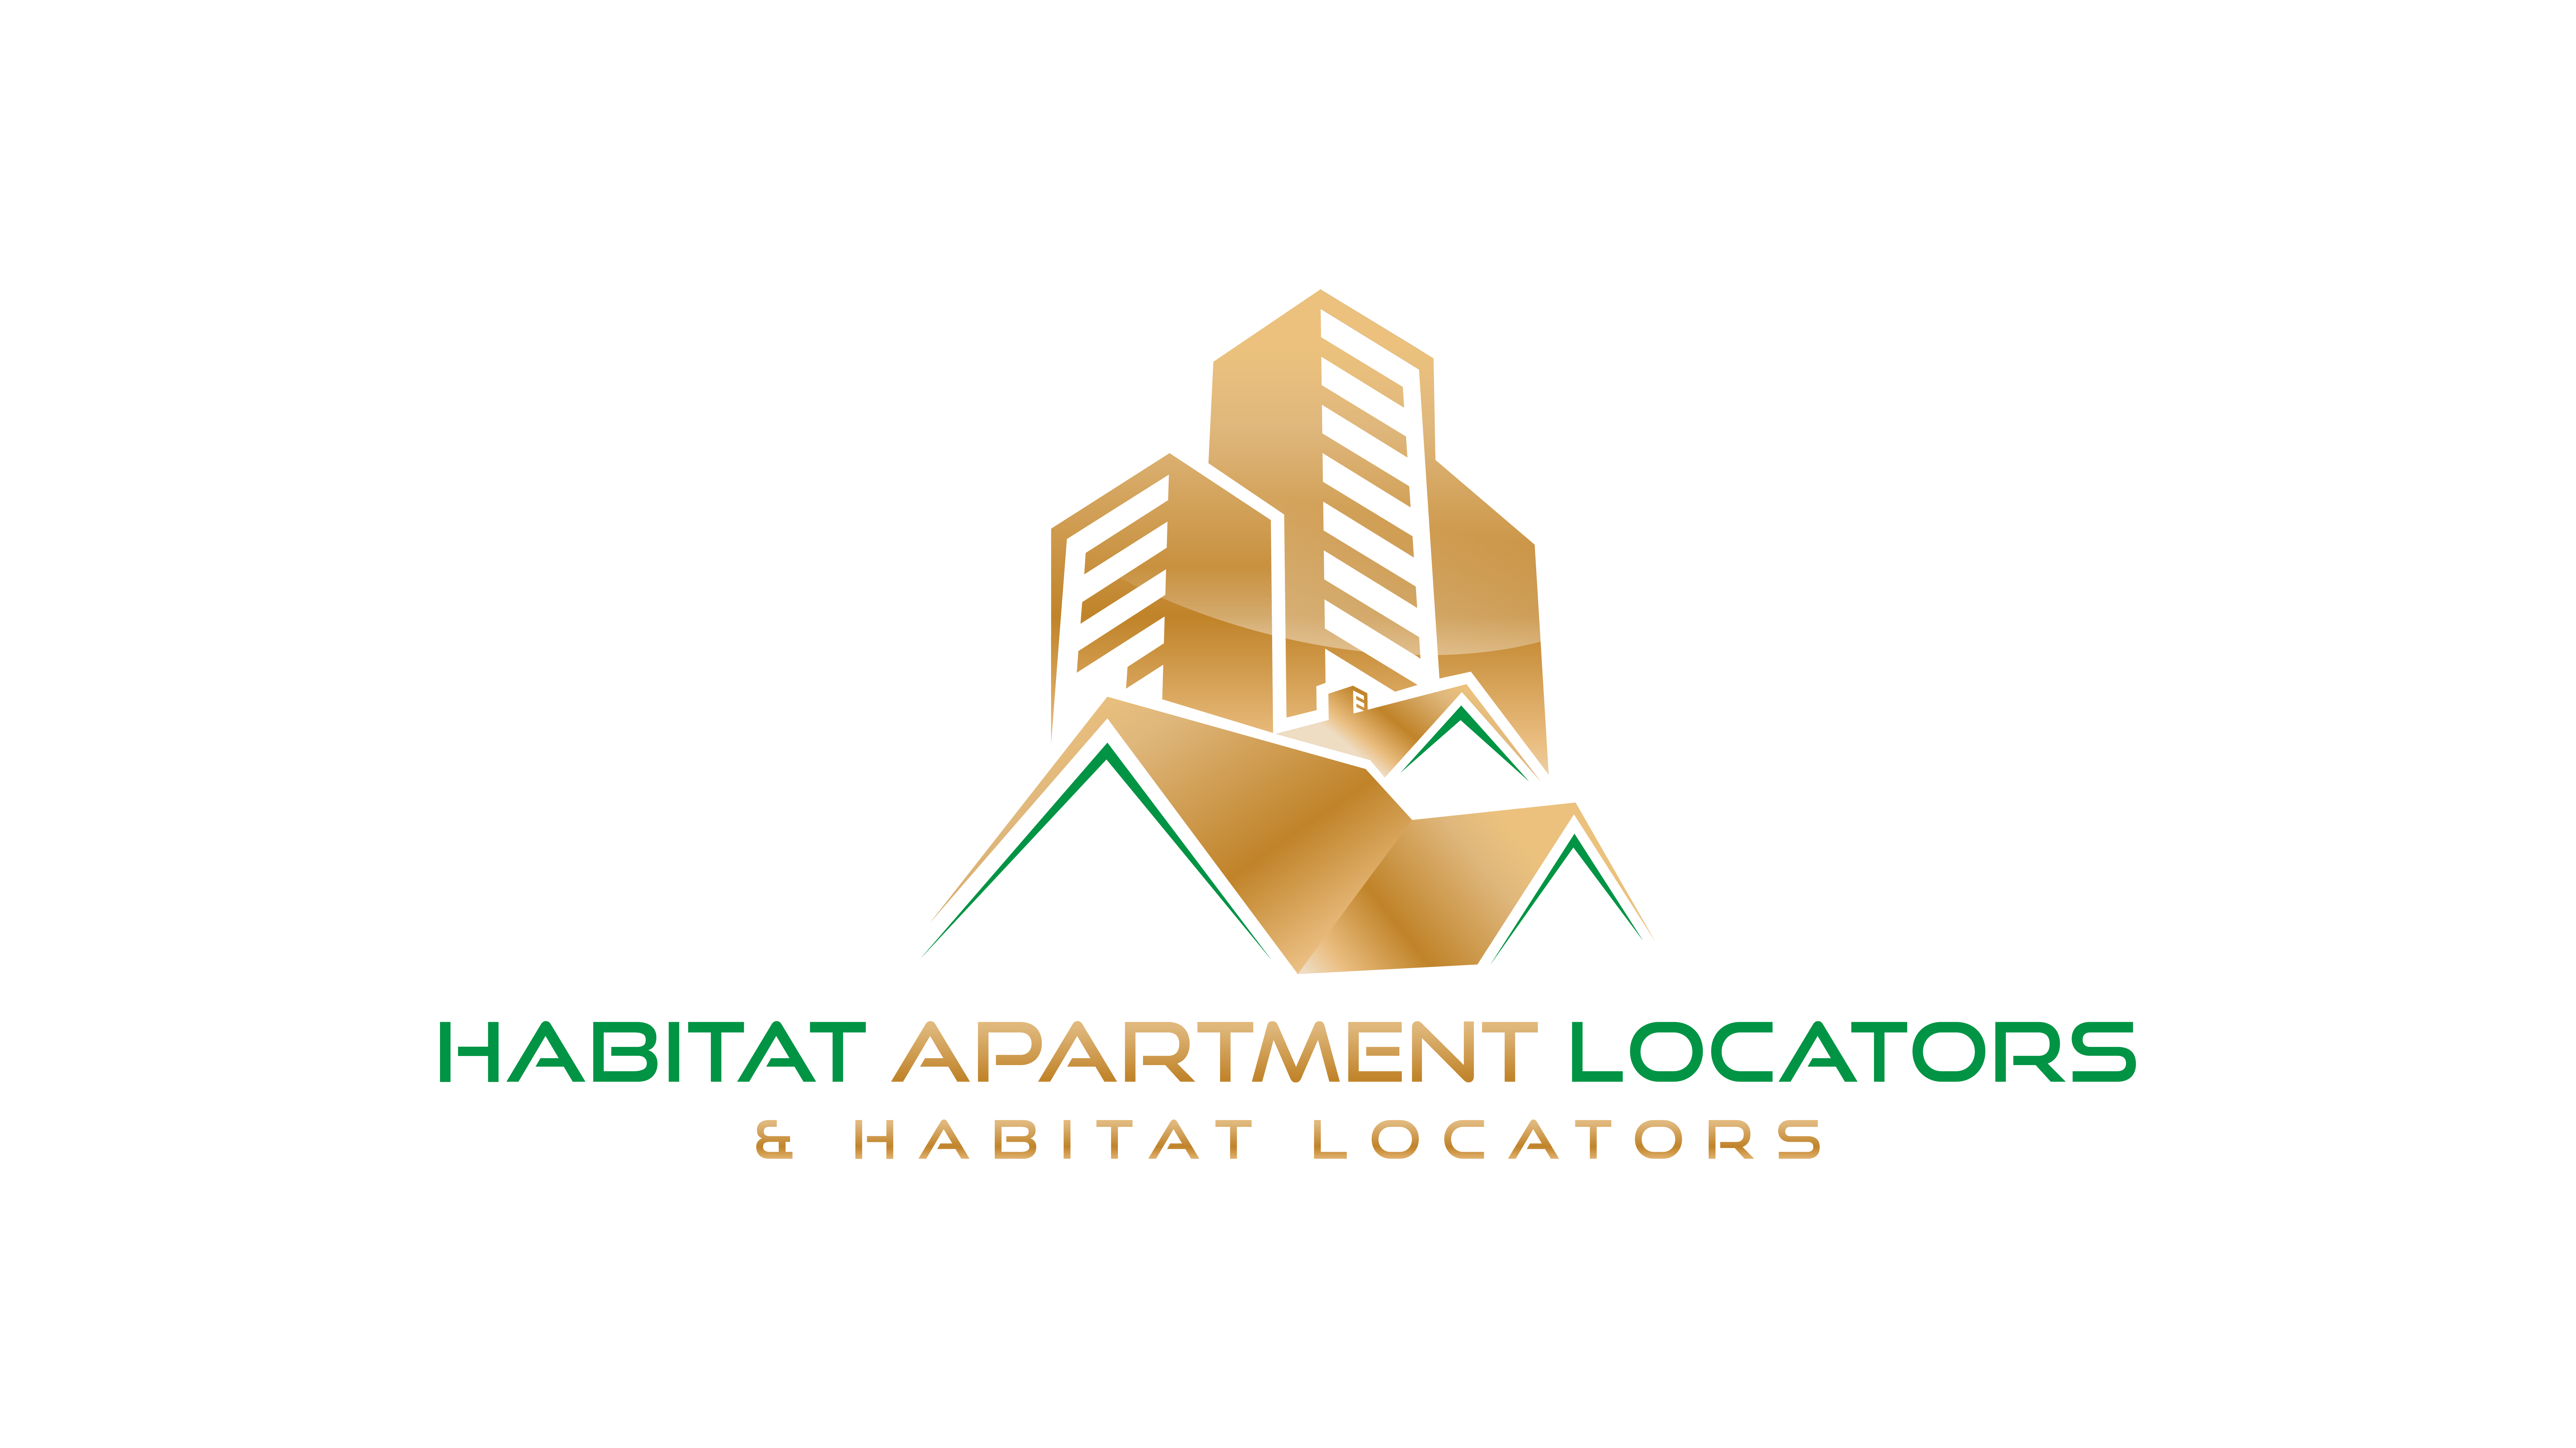 Habitat Locator Services